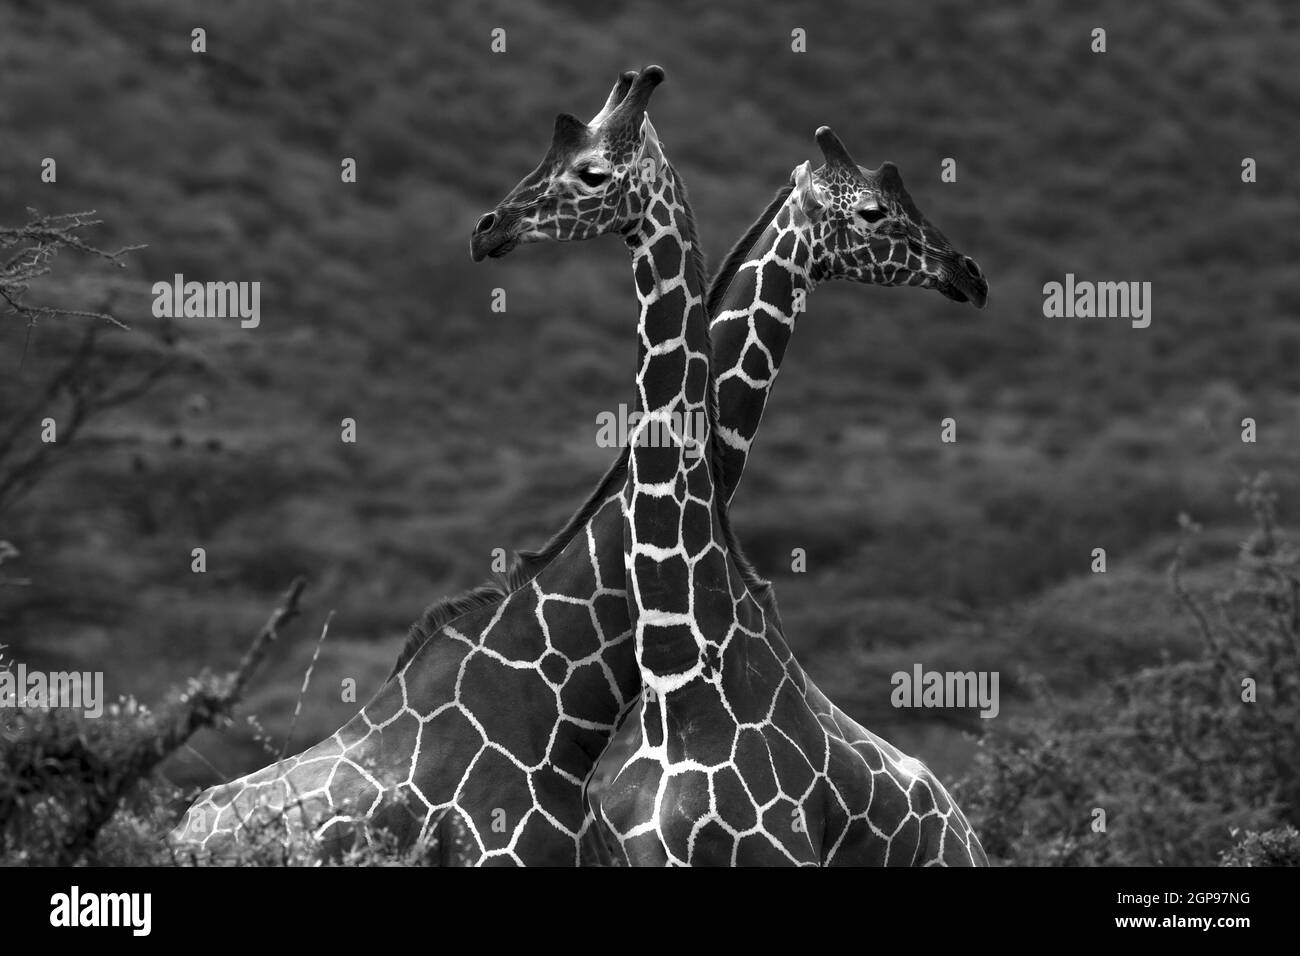 Portrait des girafes. Deux animaux sauvages à long cou dans la nature. Photo noir et blanc. Safari. Gama Drive. Réserve nationale de Samburu. Kenya. Africain Banque D'Images